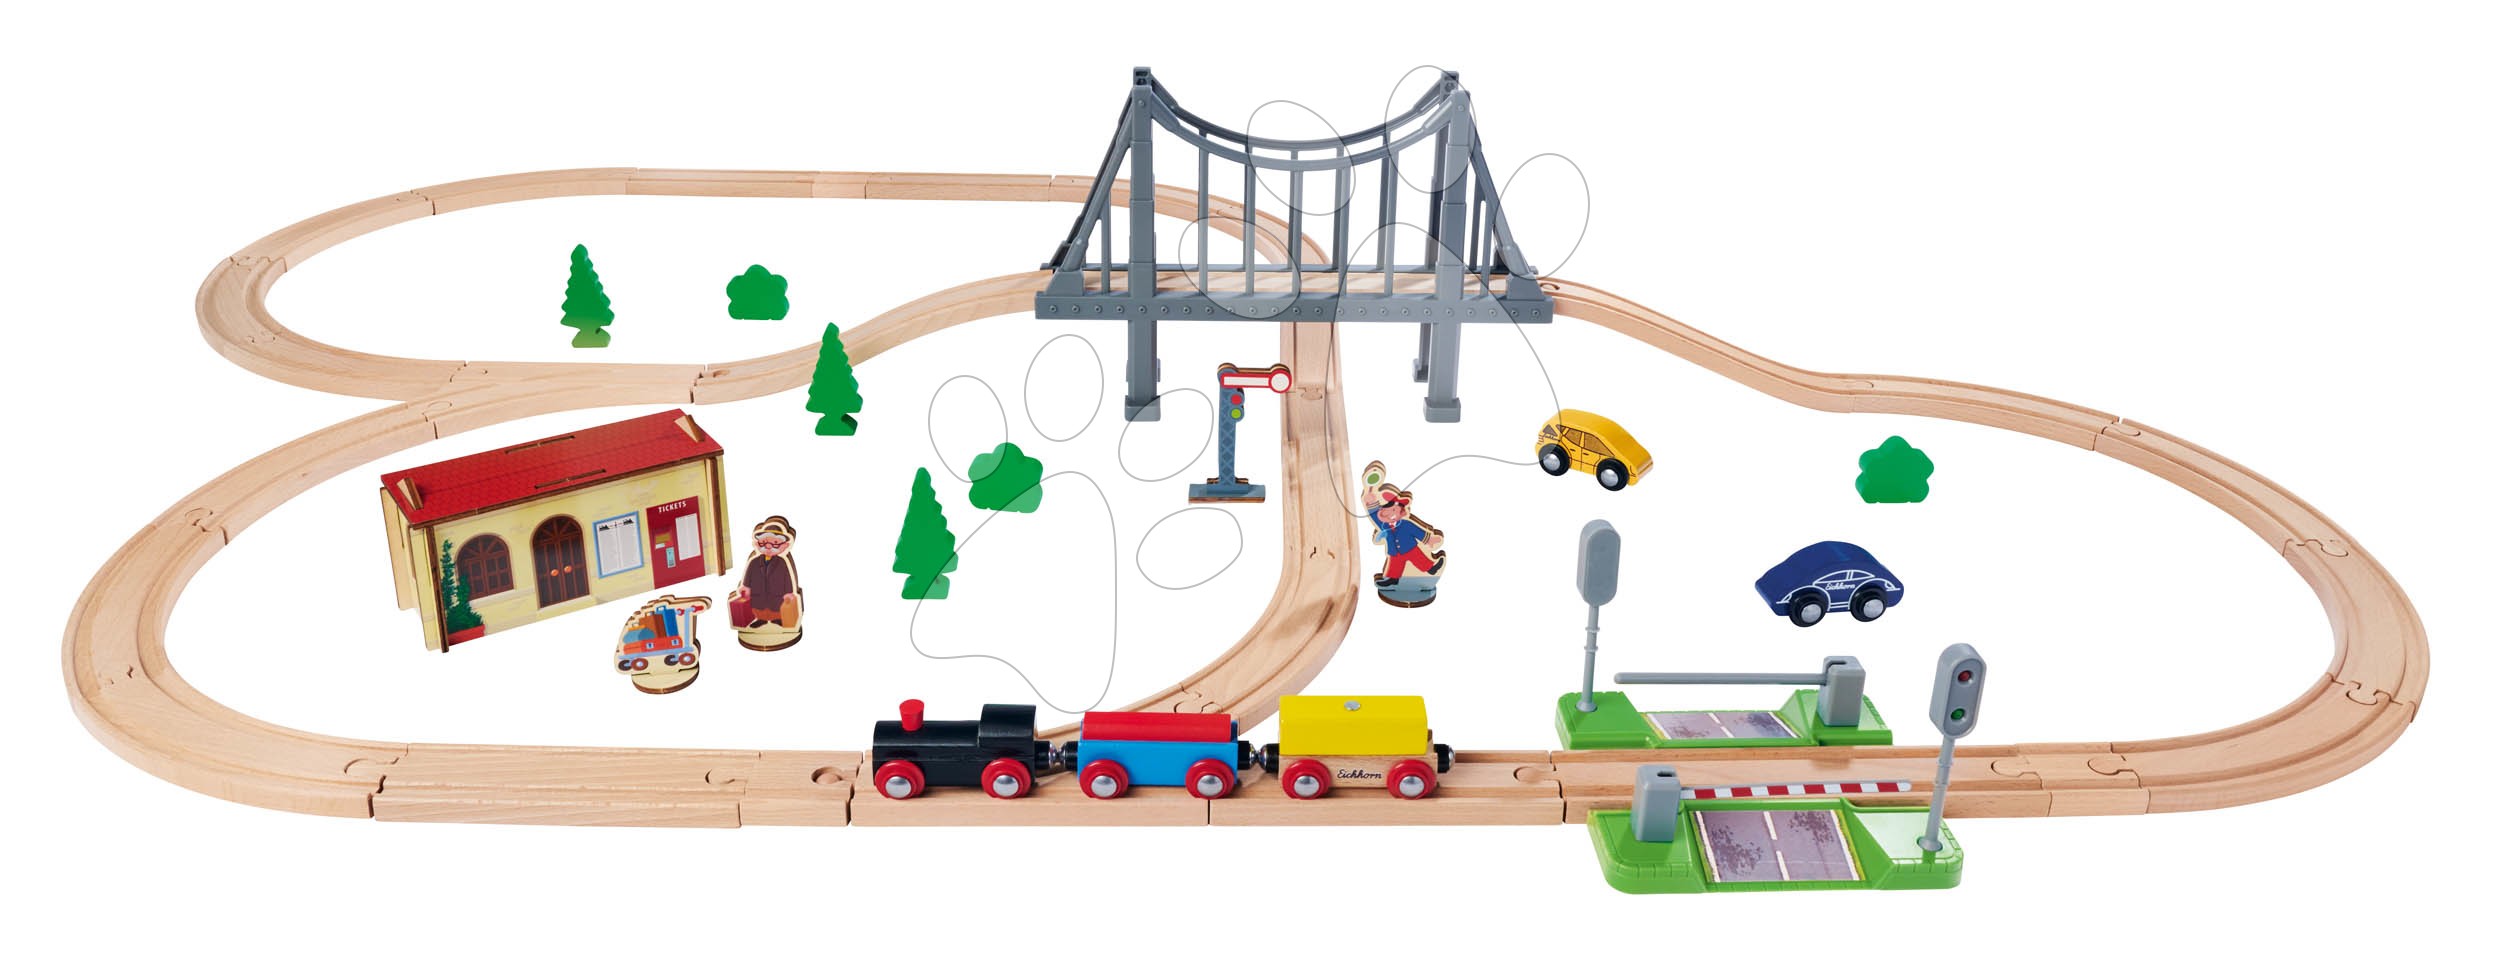 Trenuri din lemn și căi ferată - Cale ferată din lemn Train Set with Bridge Eichhorn cu locomotiva, vagoane, pod si accesorii 55 piese 500 cm lungime sine de la 3 ani